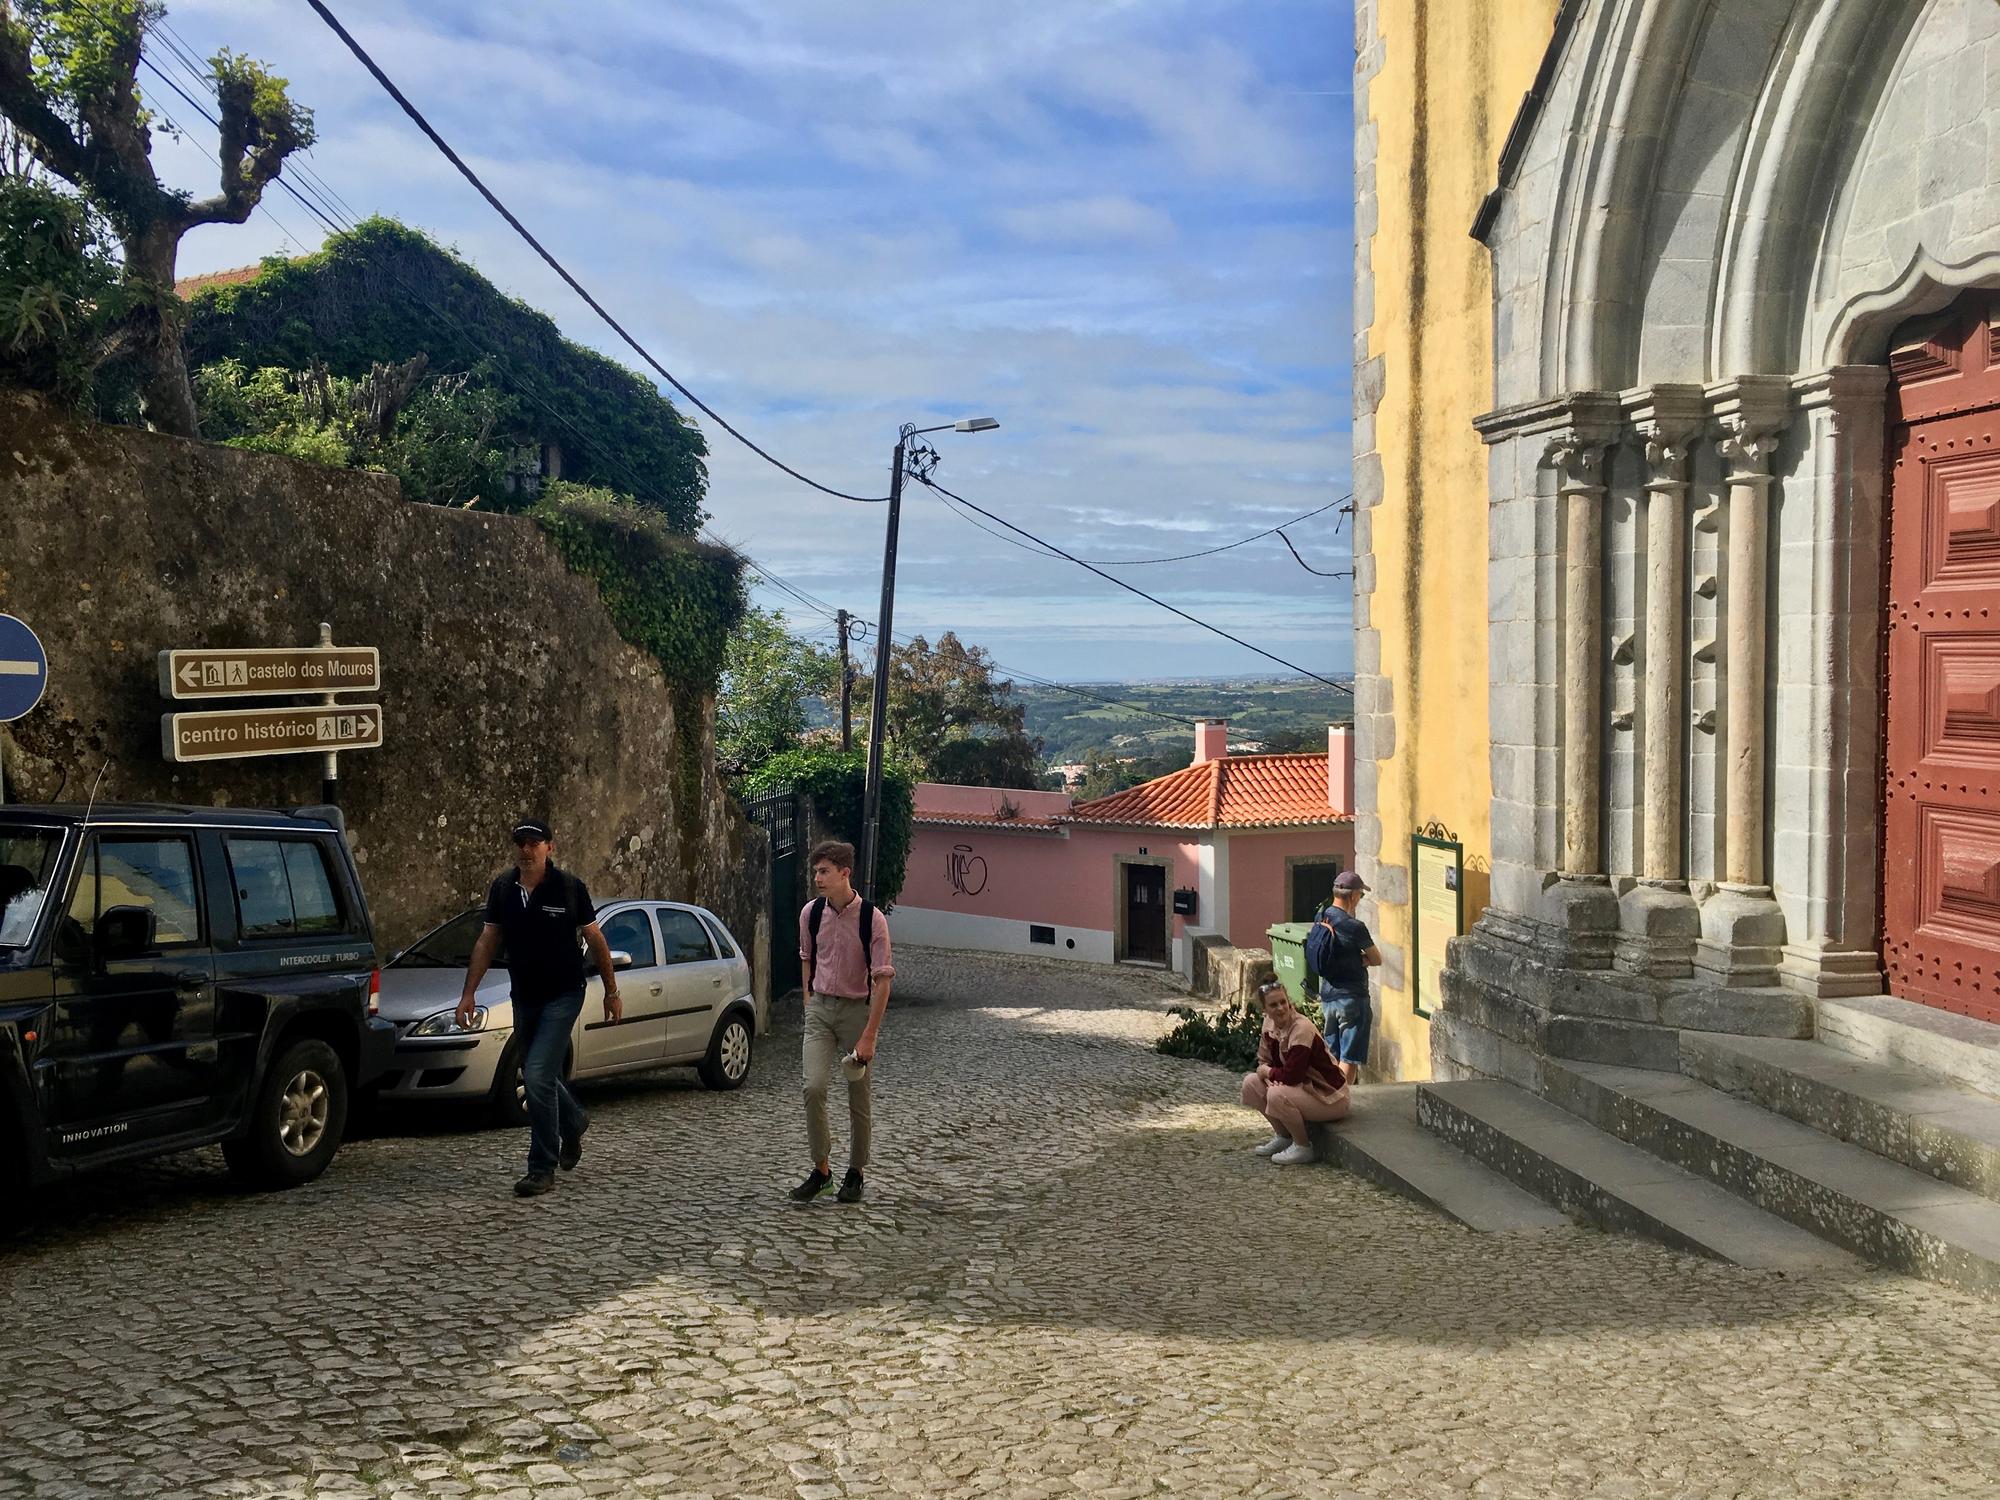 🇵🇹 Синтра, Португалия, май 2019.